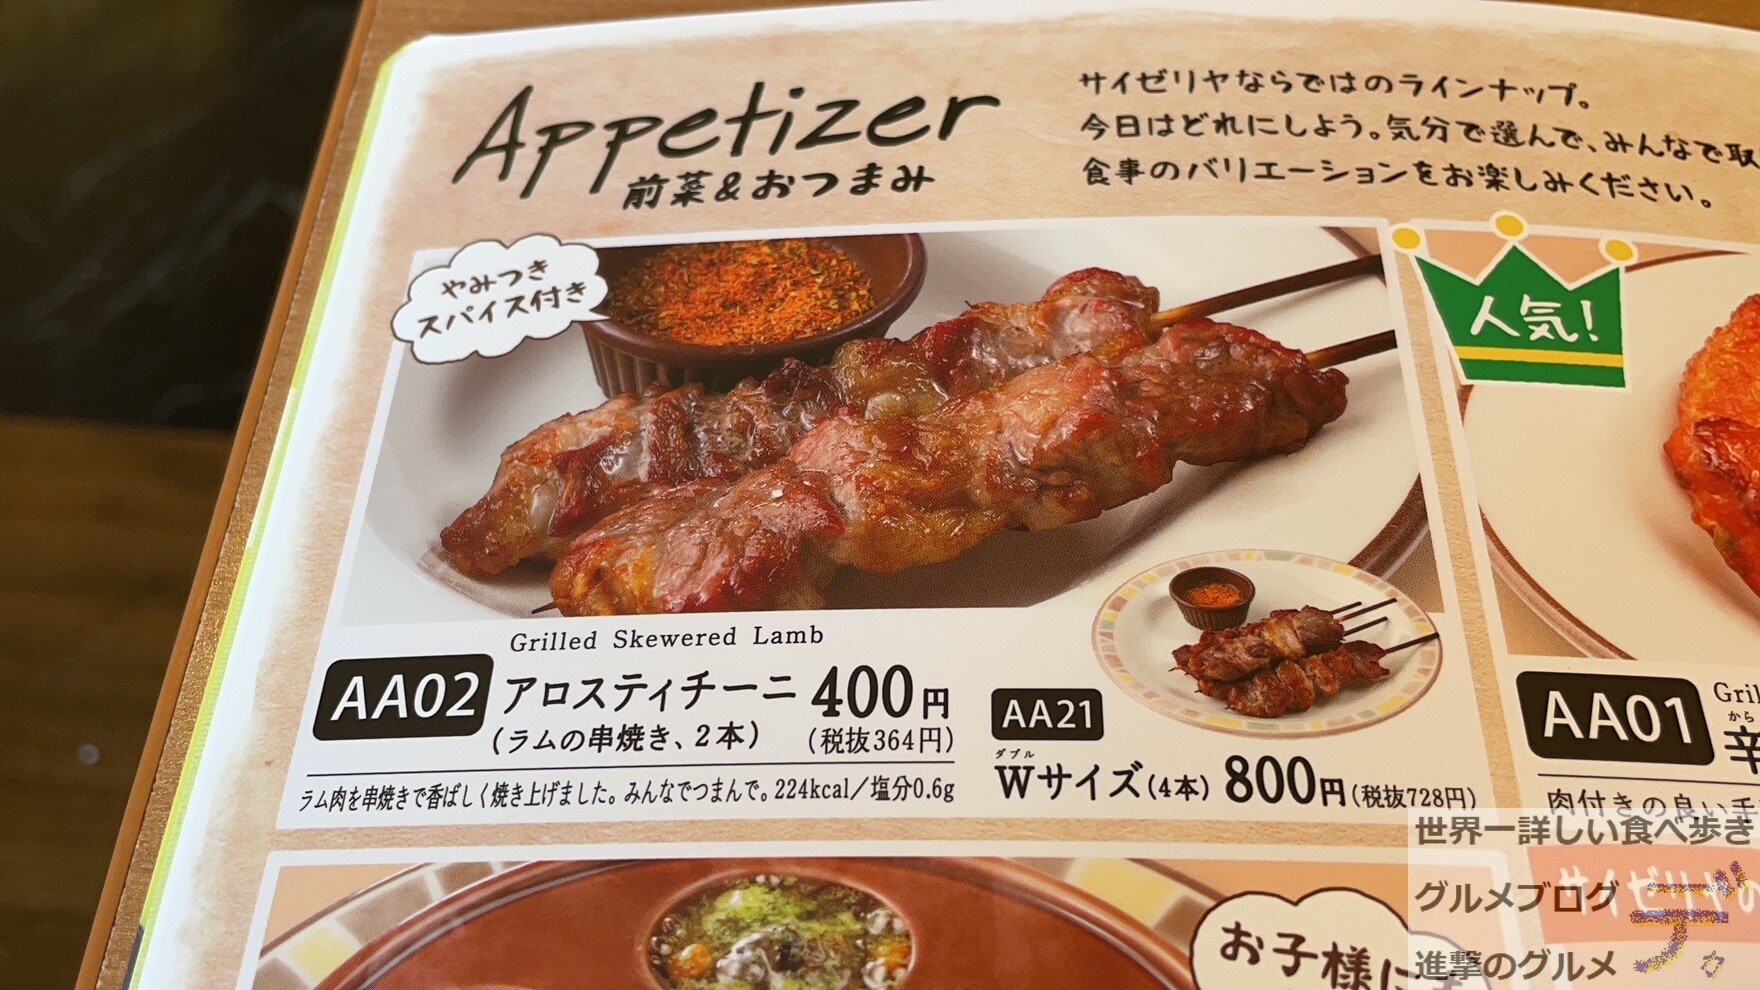 ラム肉が食べたい！」そんな時はサイゼの”アロスティチーニ”がオススメ - 進撃のグルメ | Yahoo! JAPAN クリエイターズプログラム